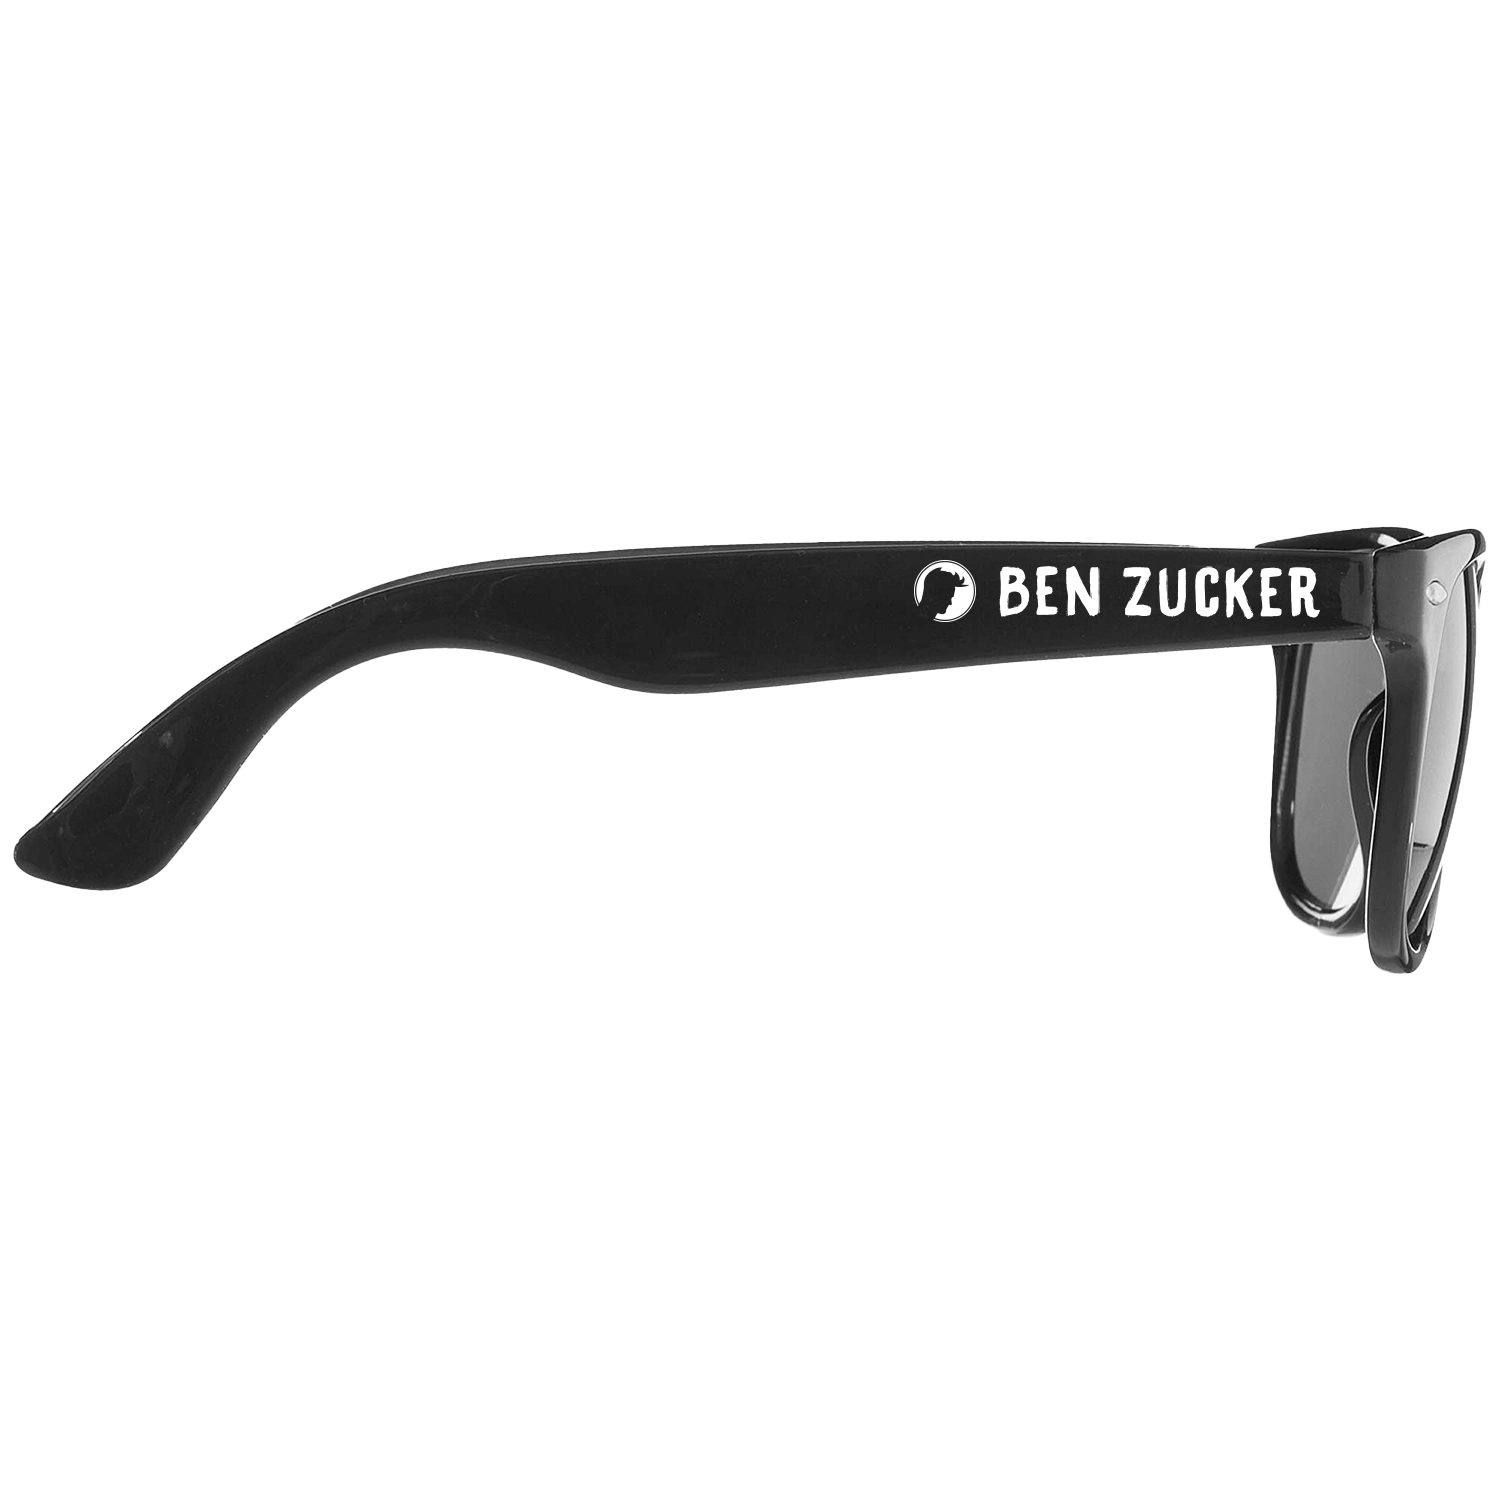 Ben Zucker Sonnenbrille "Was für eine geile Zeit"